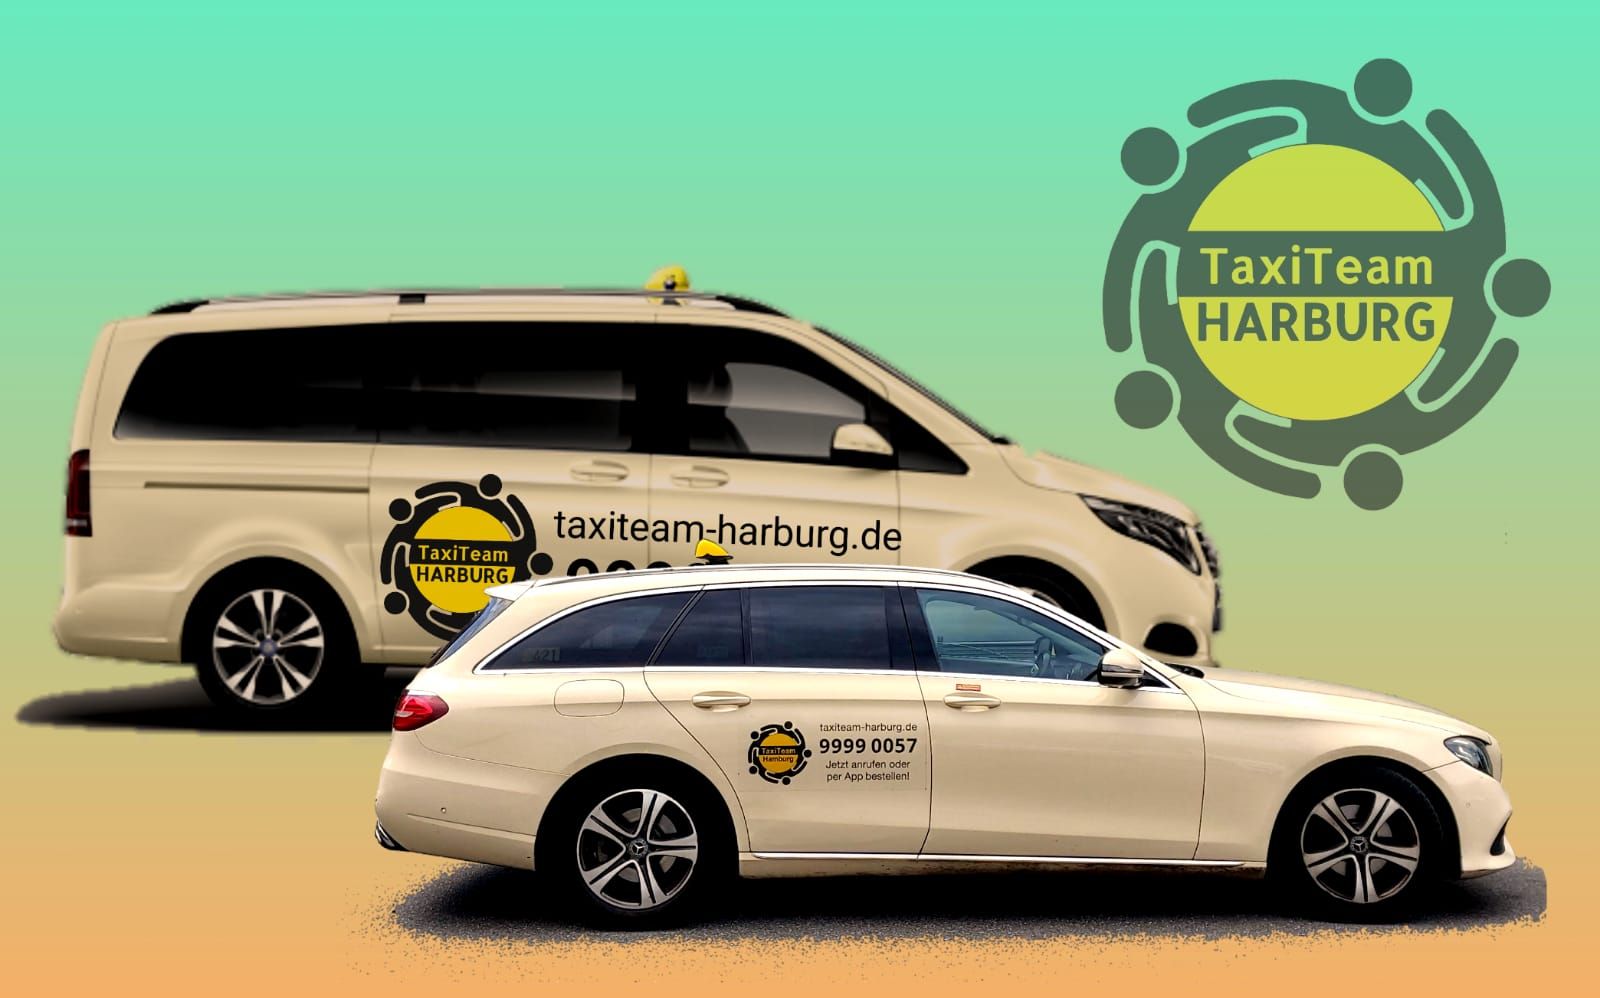 Taxi Team Harburg, Immer die beste Wahl 